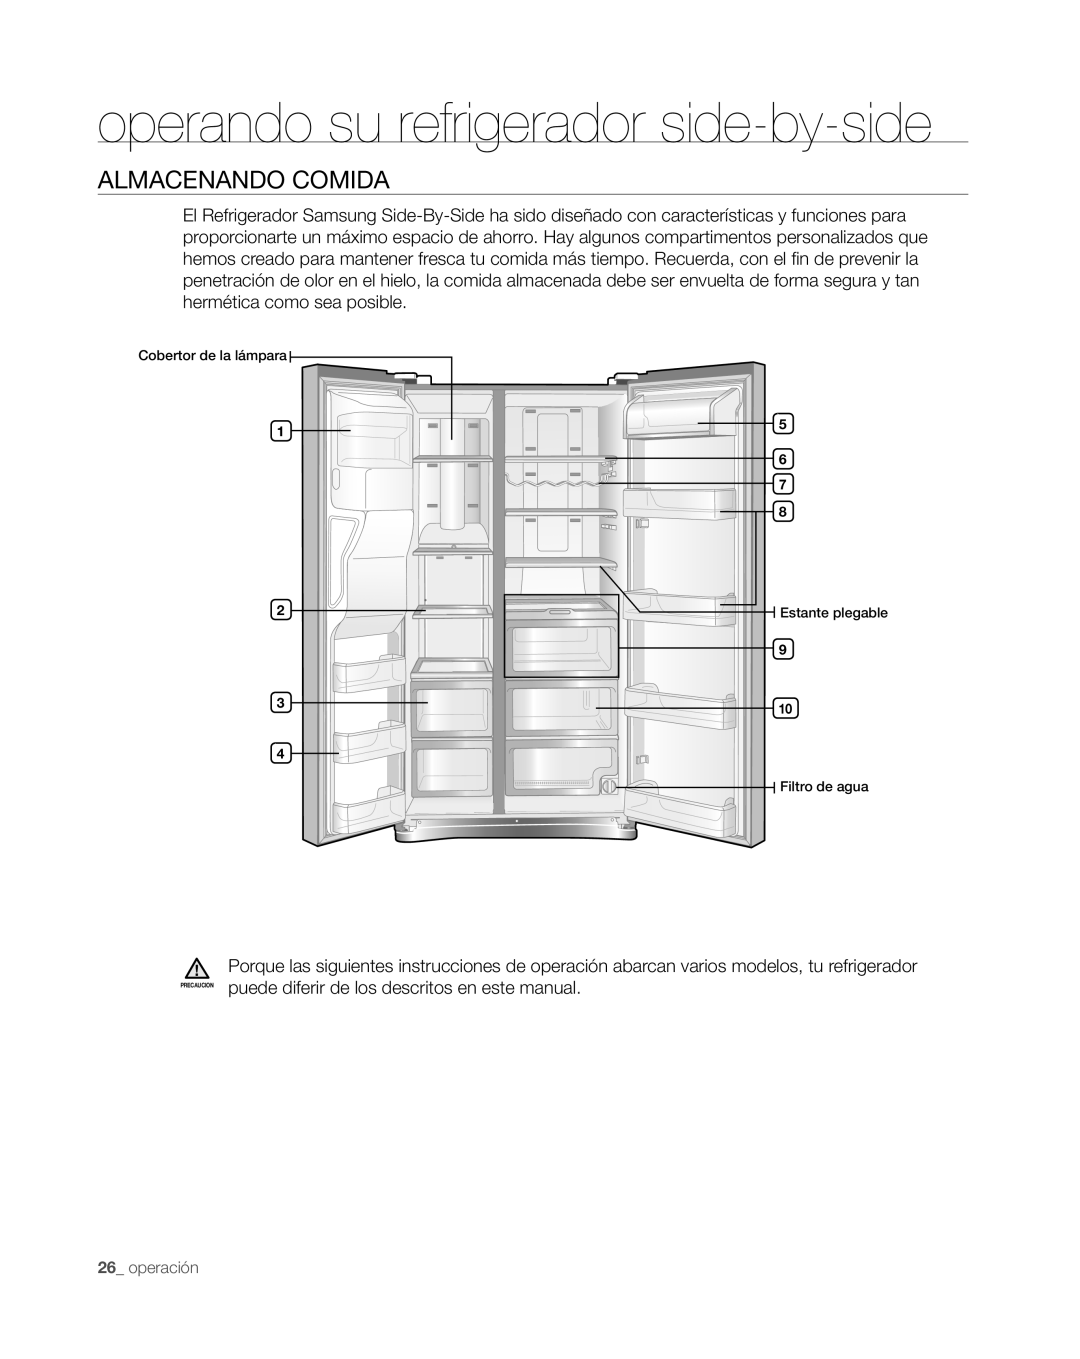 Samsung RS265TDWP, RS267TDWP user manual Almacenando Comida, operando su refrigerador side-by-side, operación 